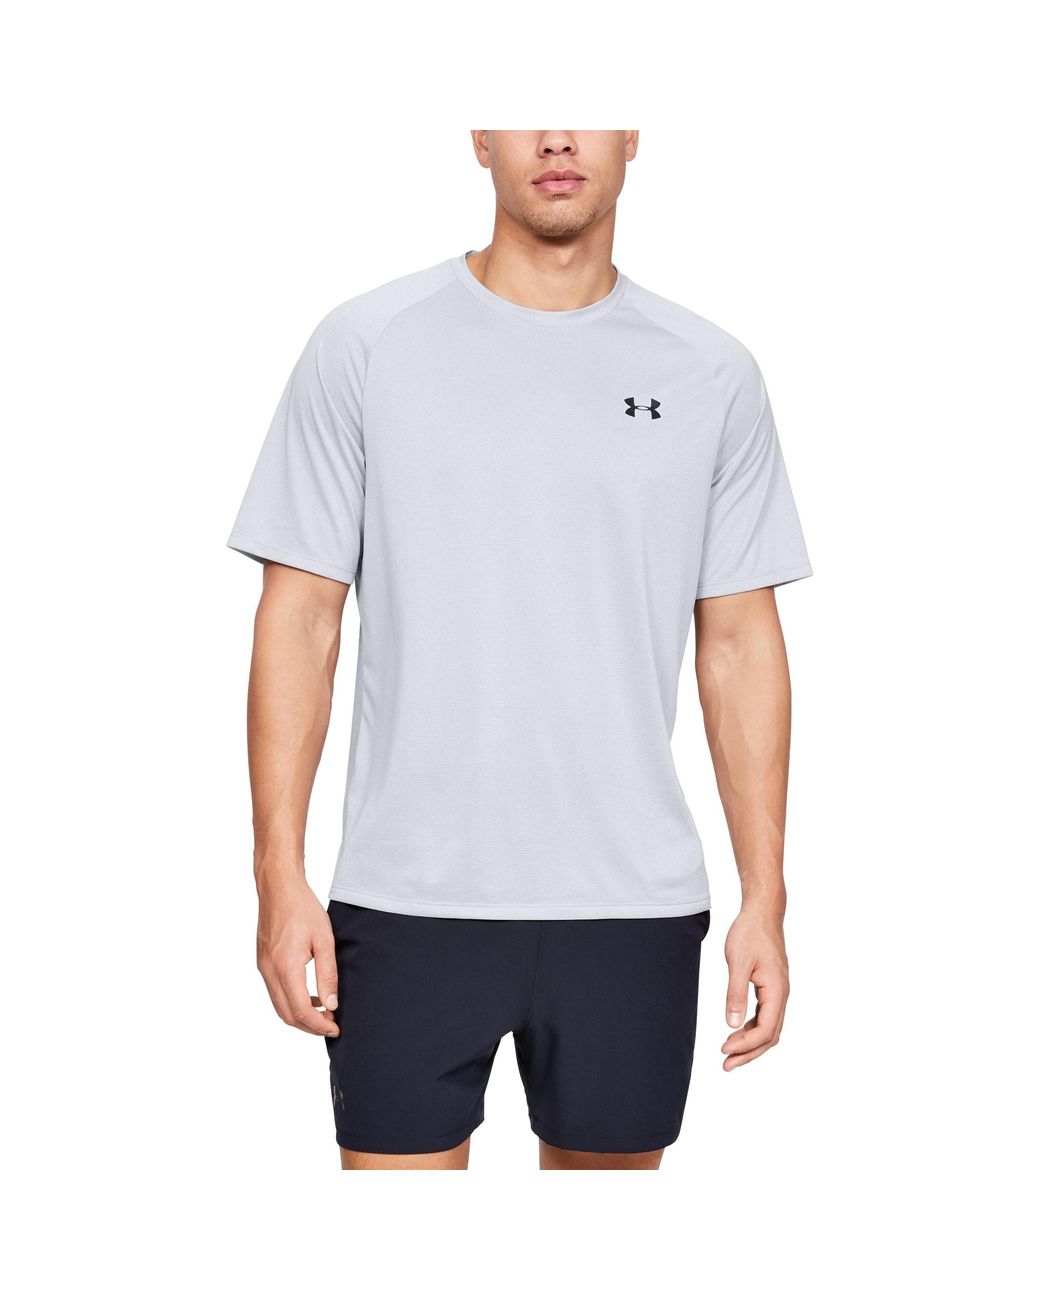 Under Armour Herren UA Tech 2.0 T-Shirt kurzärmlig Trainingsshirt grau  Fitness, Running & Yoga Equipment Sporting Goods